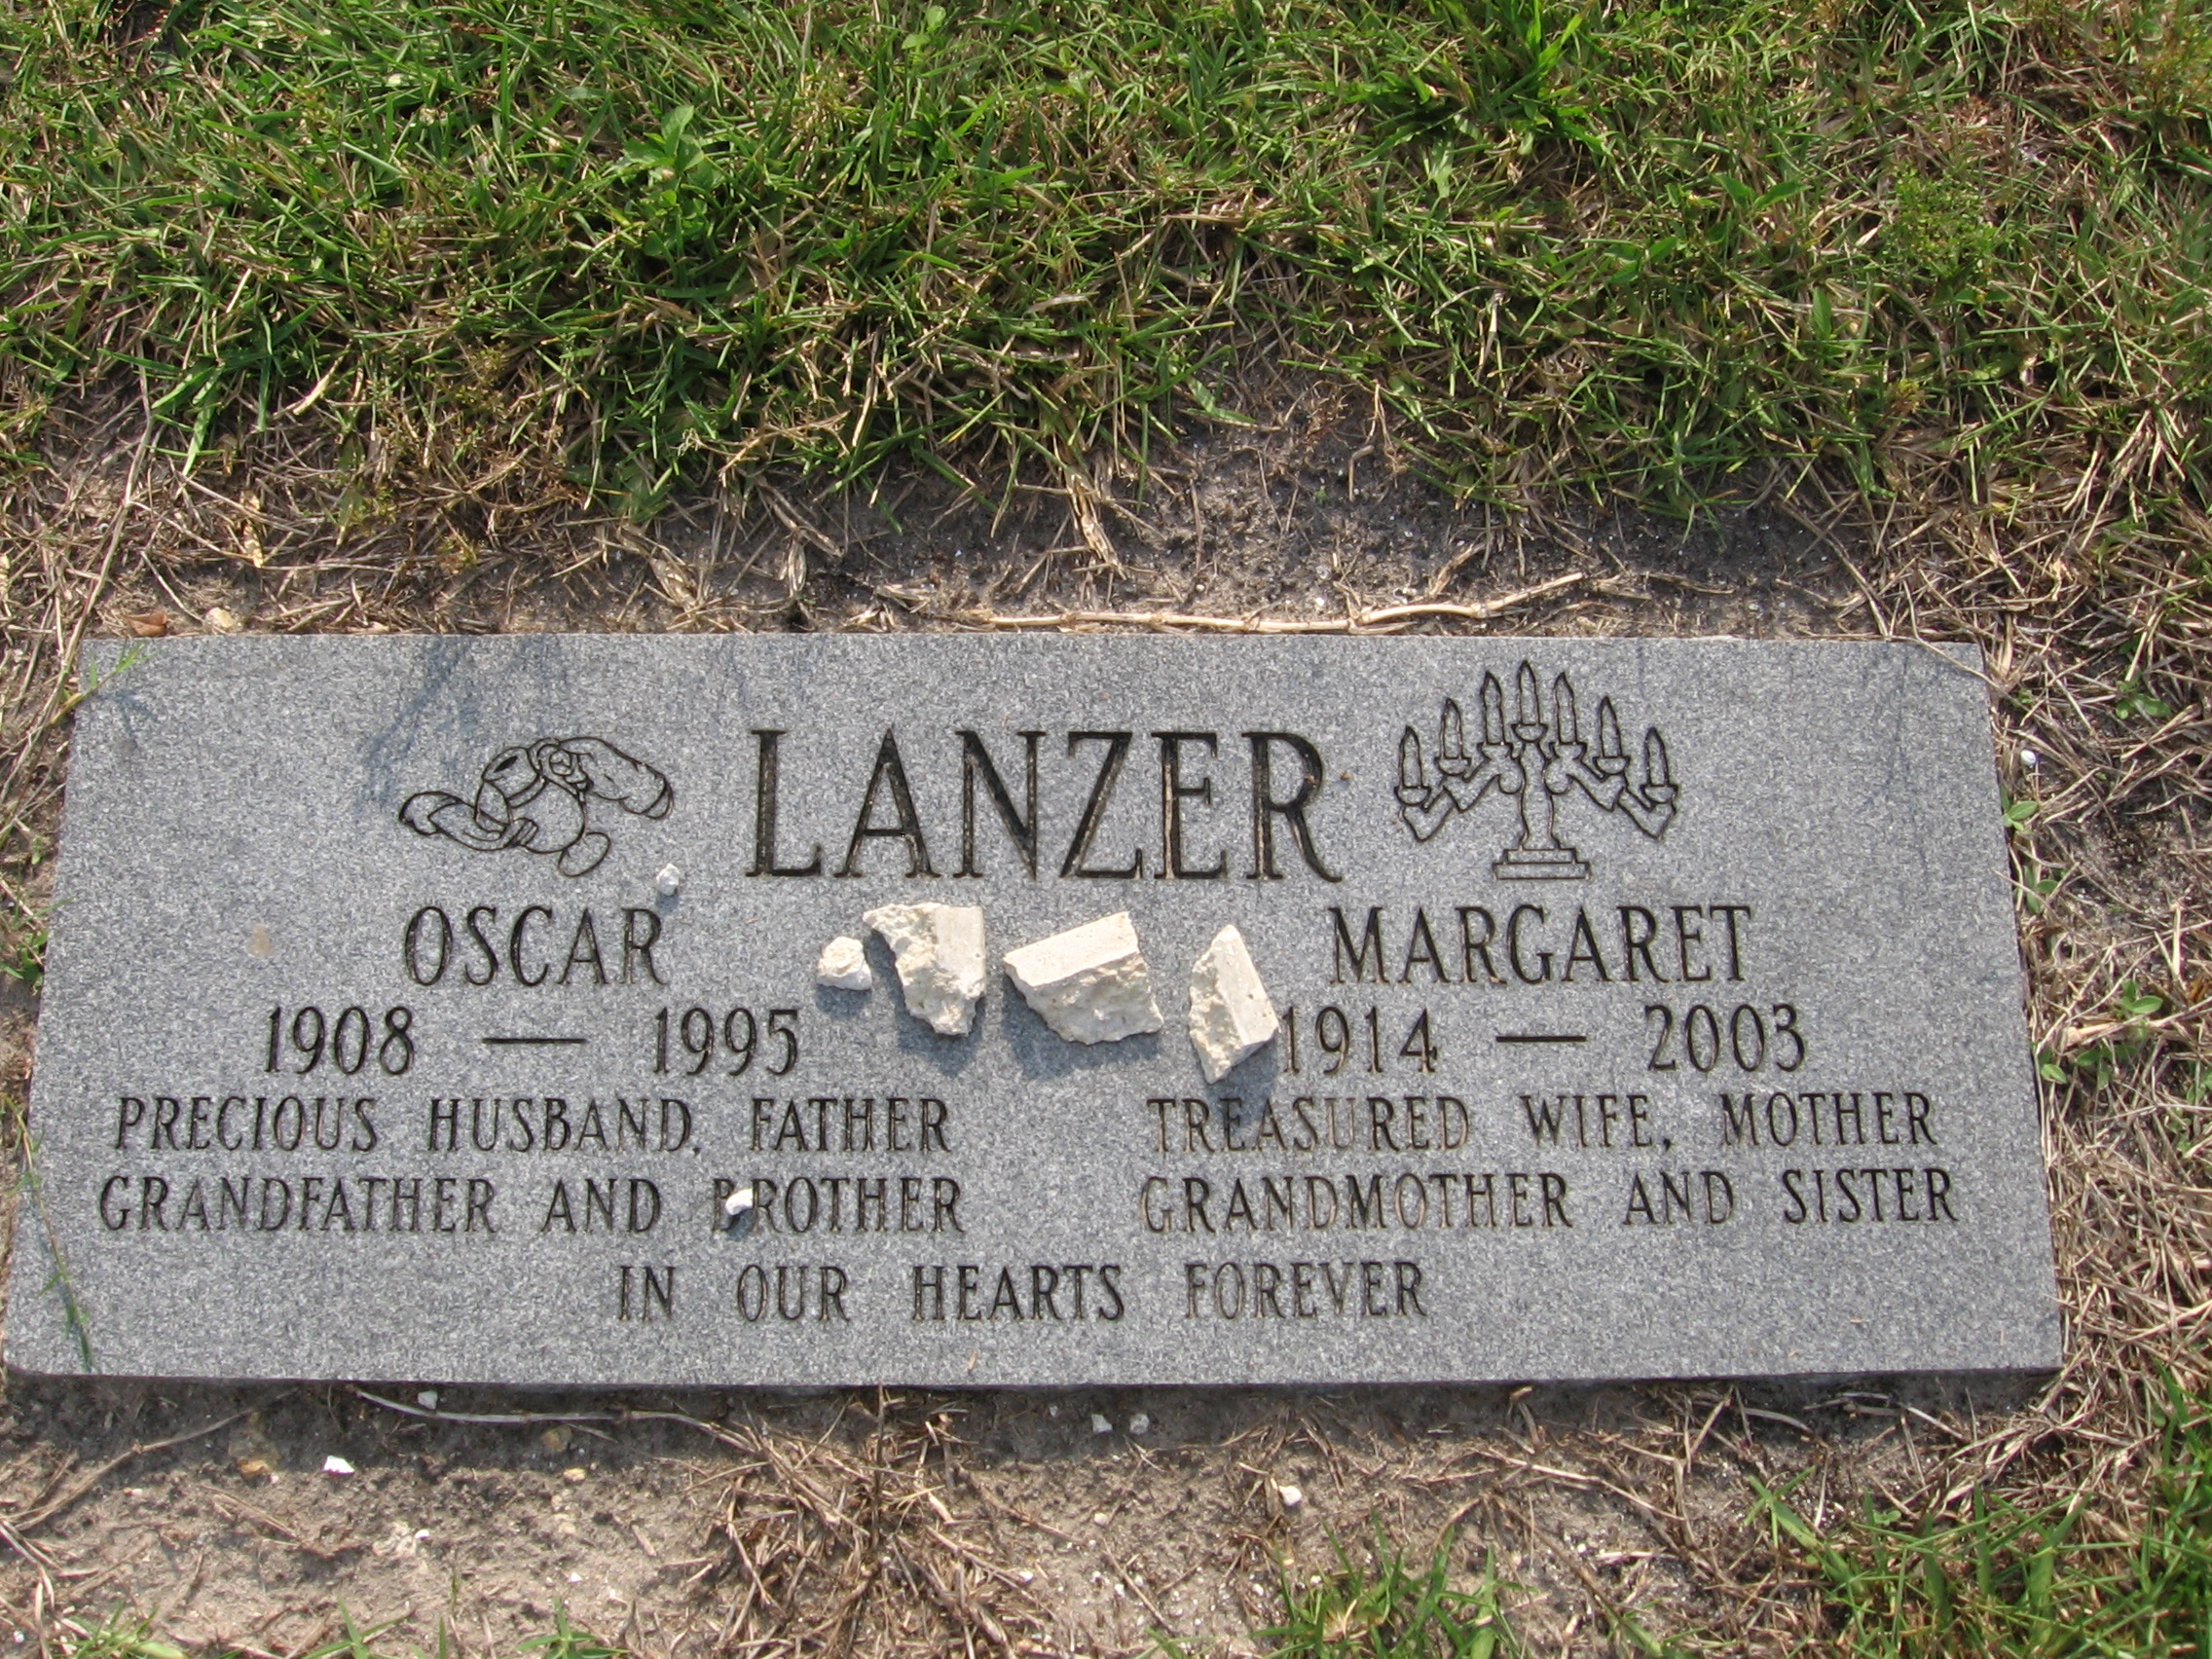 Margaret Lanzer